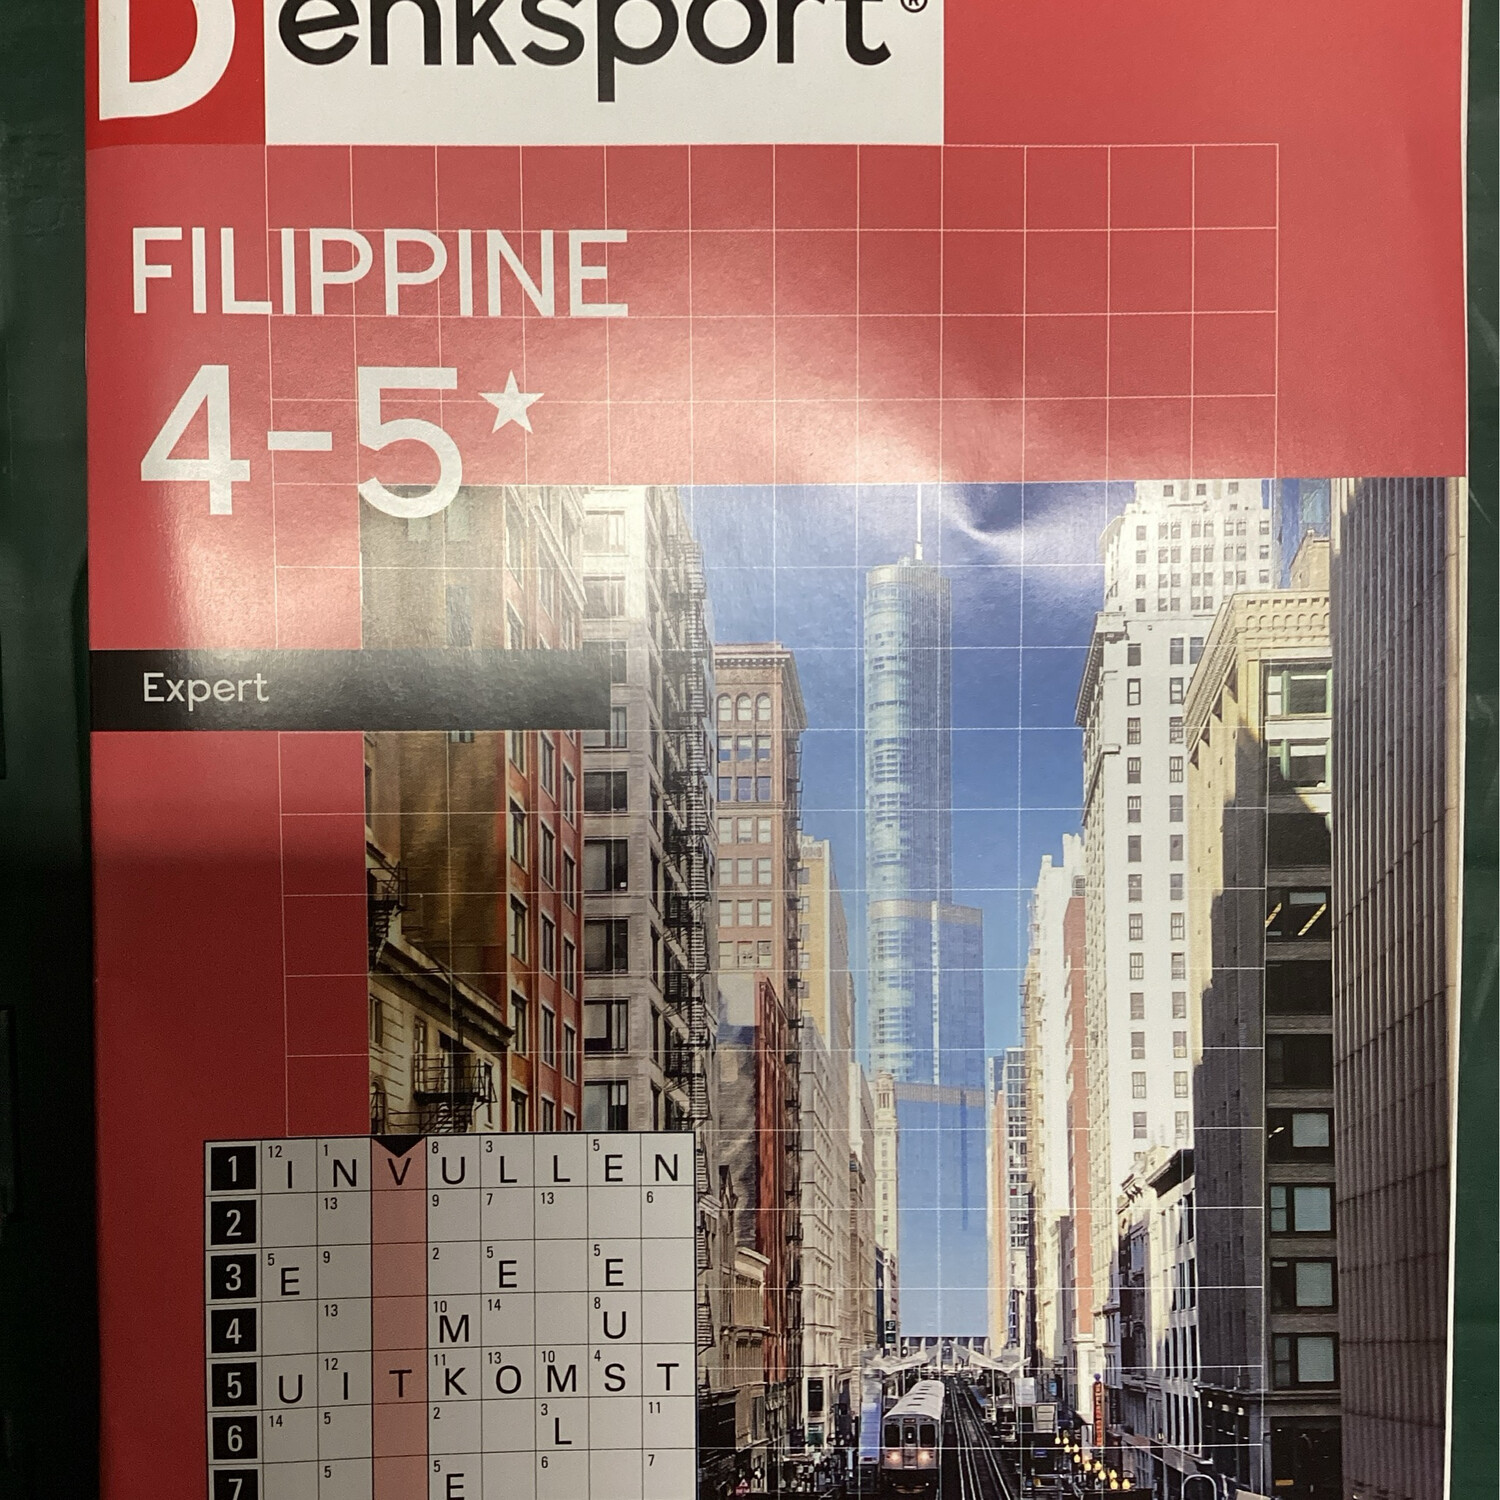 DS FILIPPINE 4-5* 42